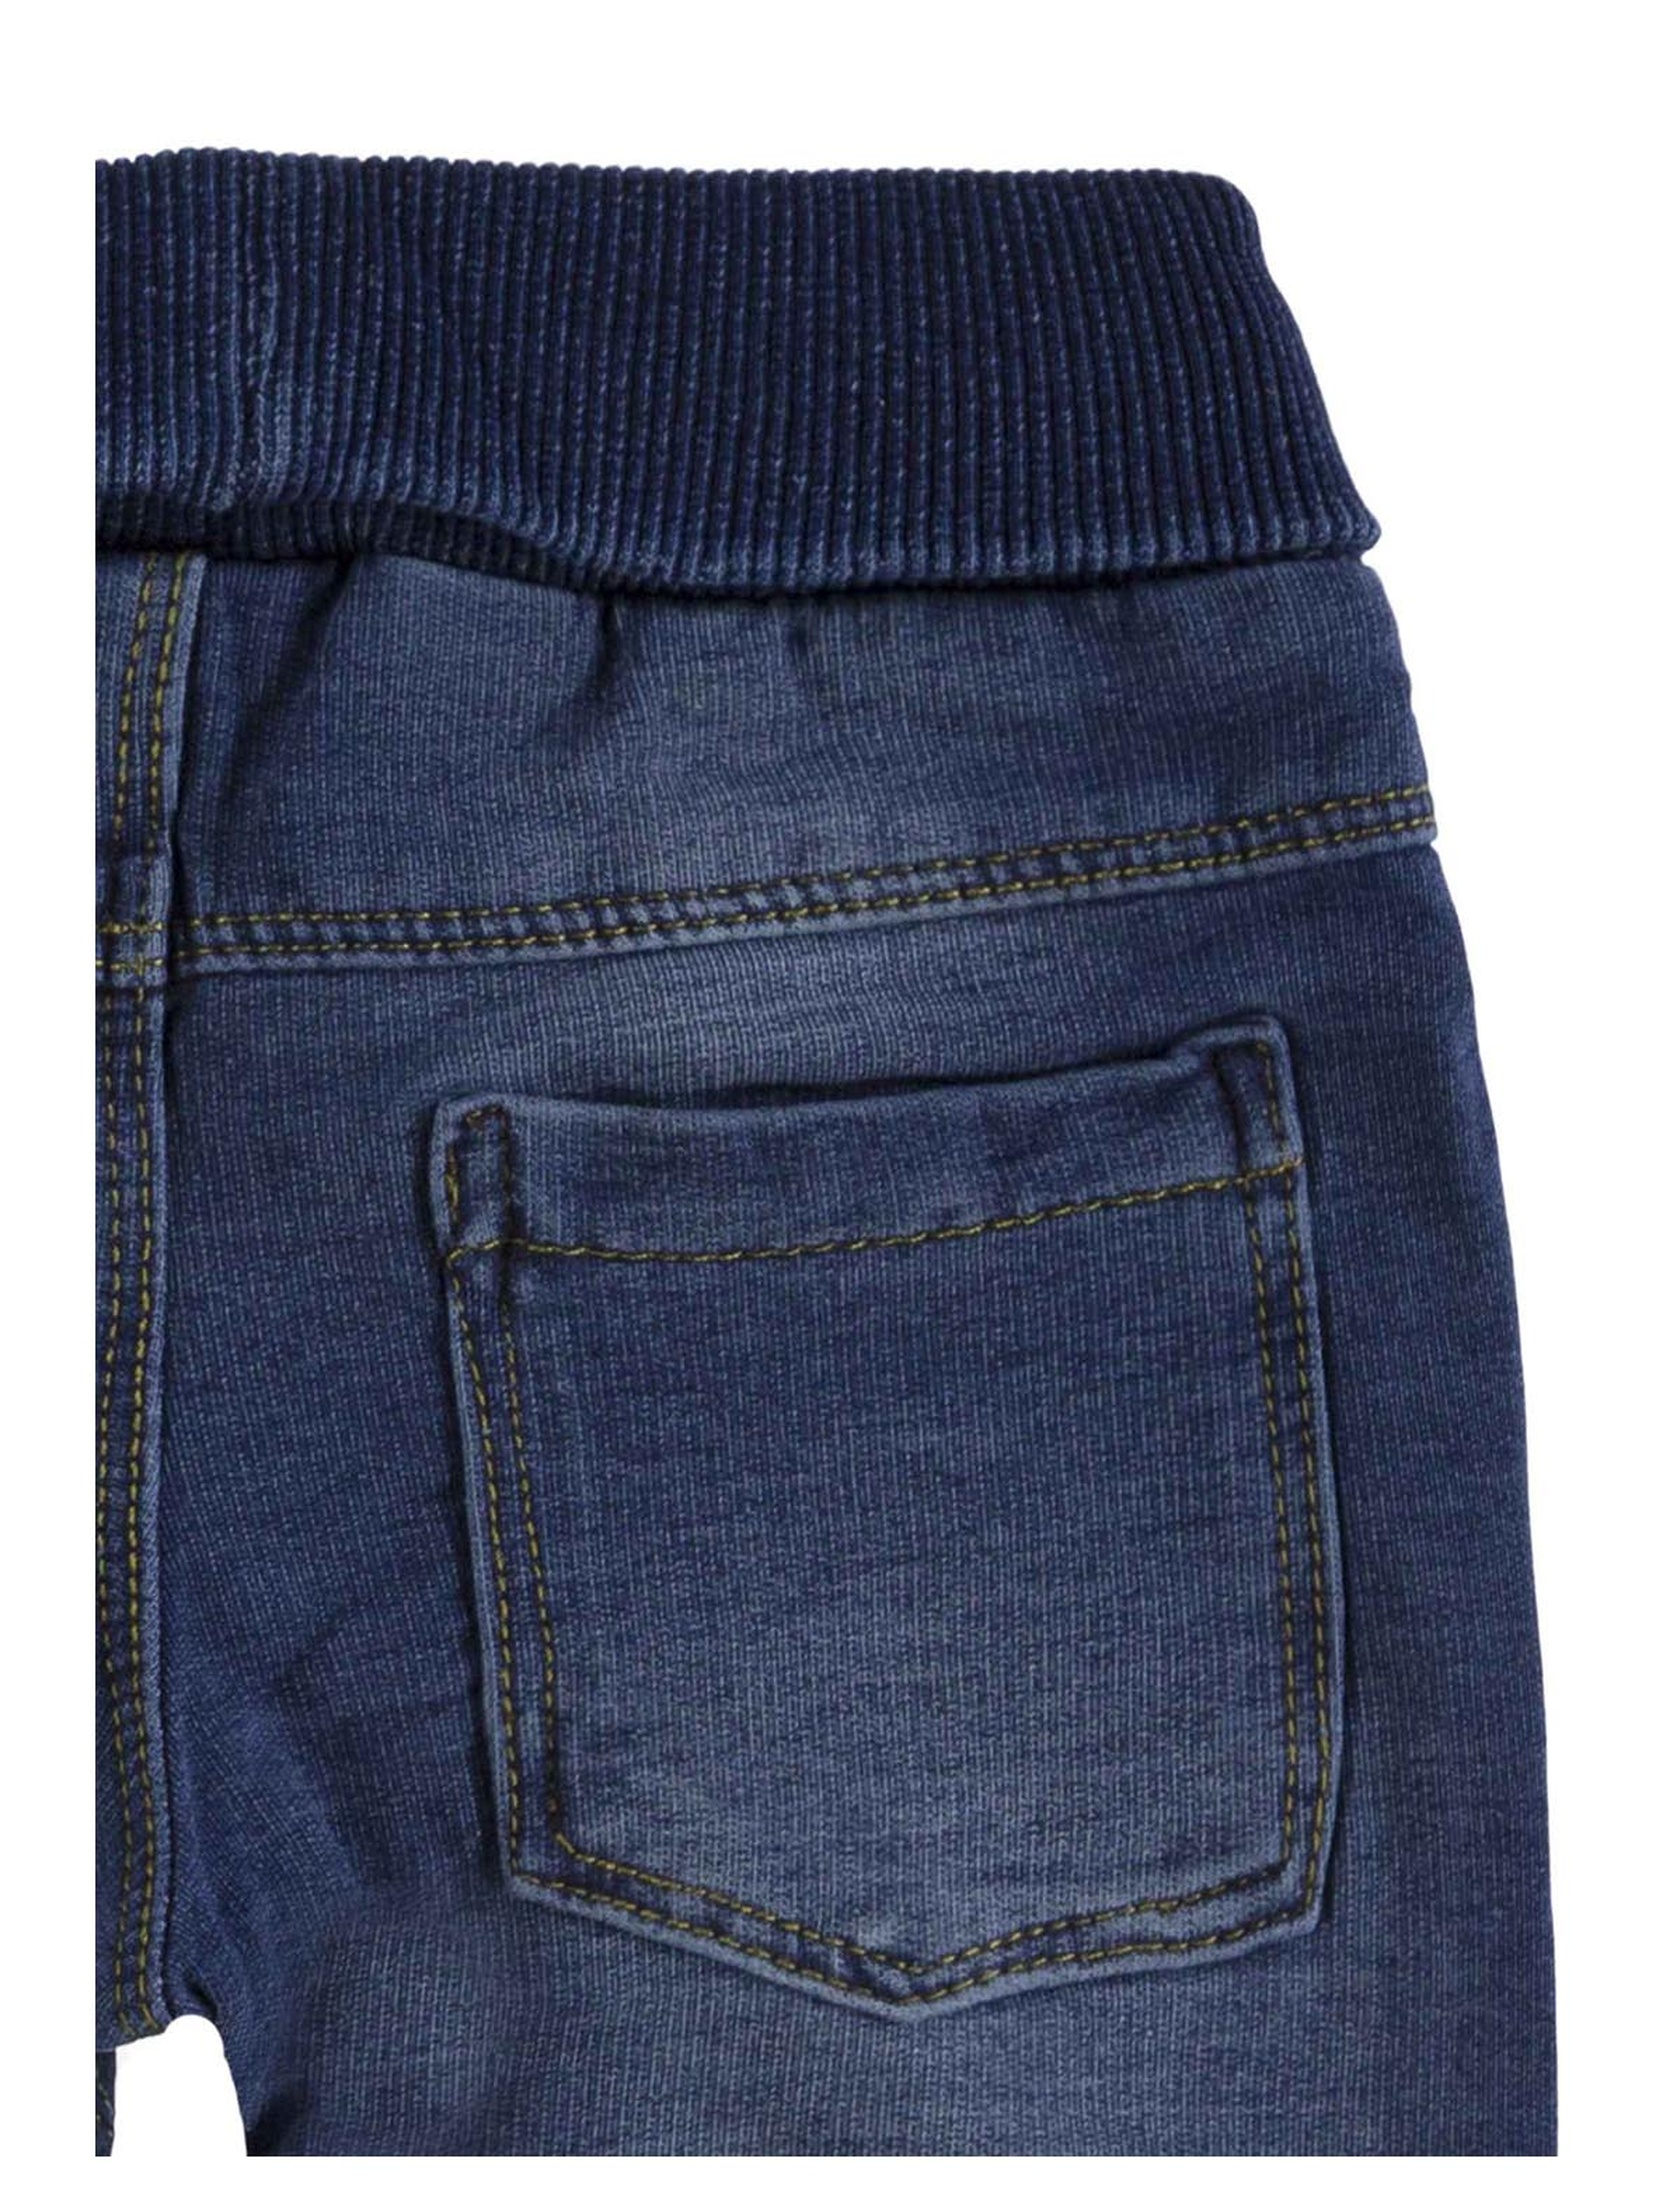 Spodnie jeansowe niemowlęce, niebieskie, bellybutton